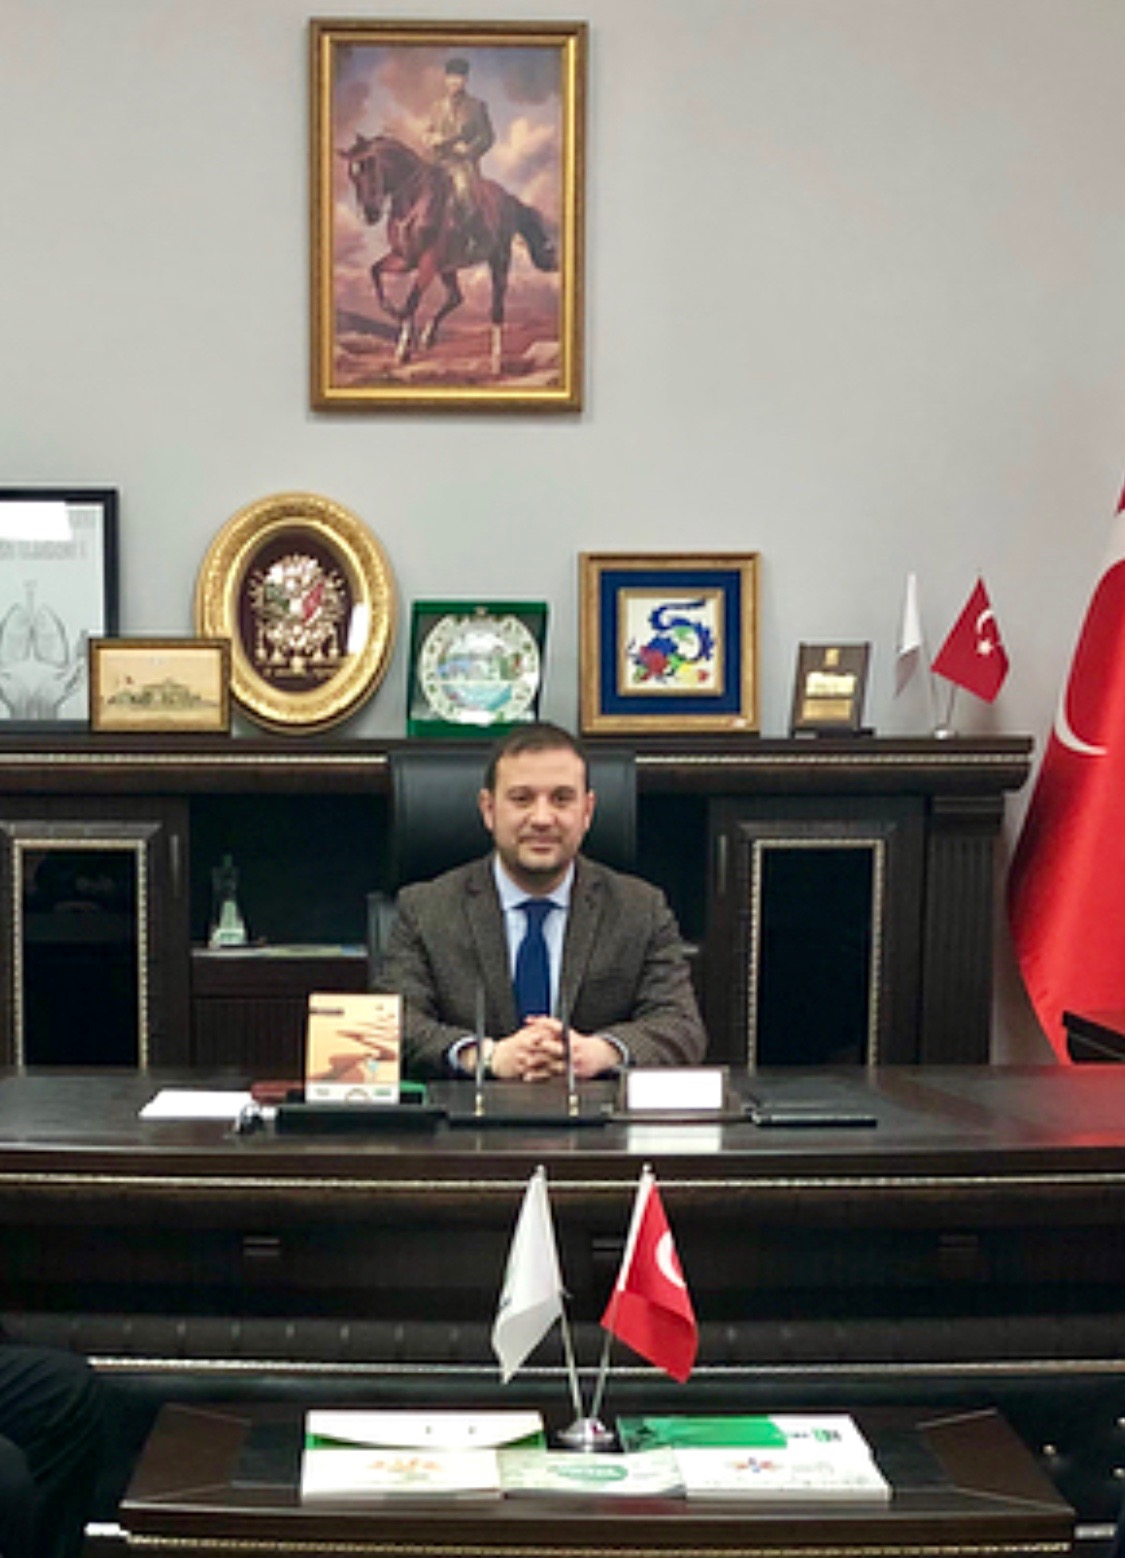 Yeşilay Sakarya Şubesi Başkanı Fatih Kıcır, Bölge Koordinatörlüğüne getirildi.